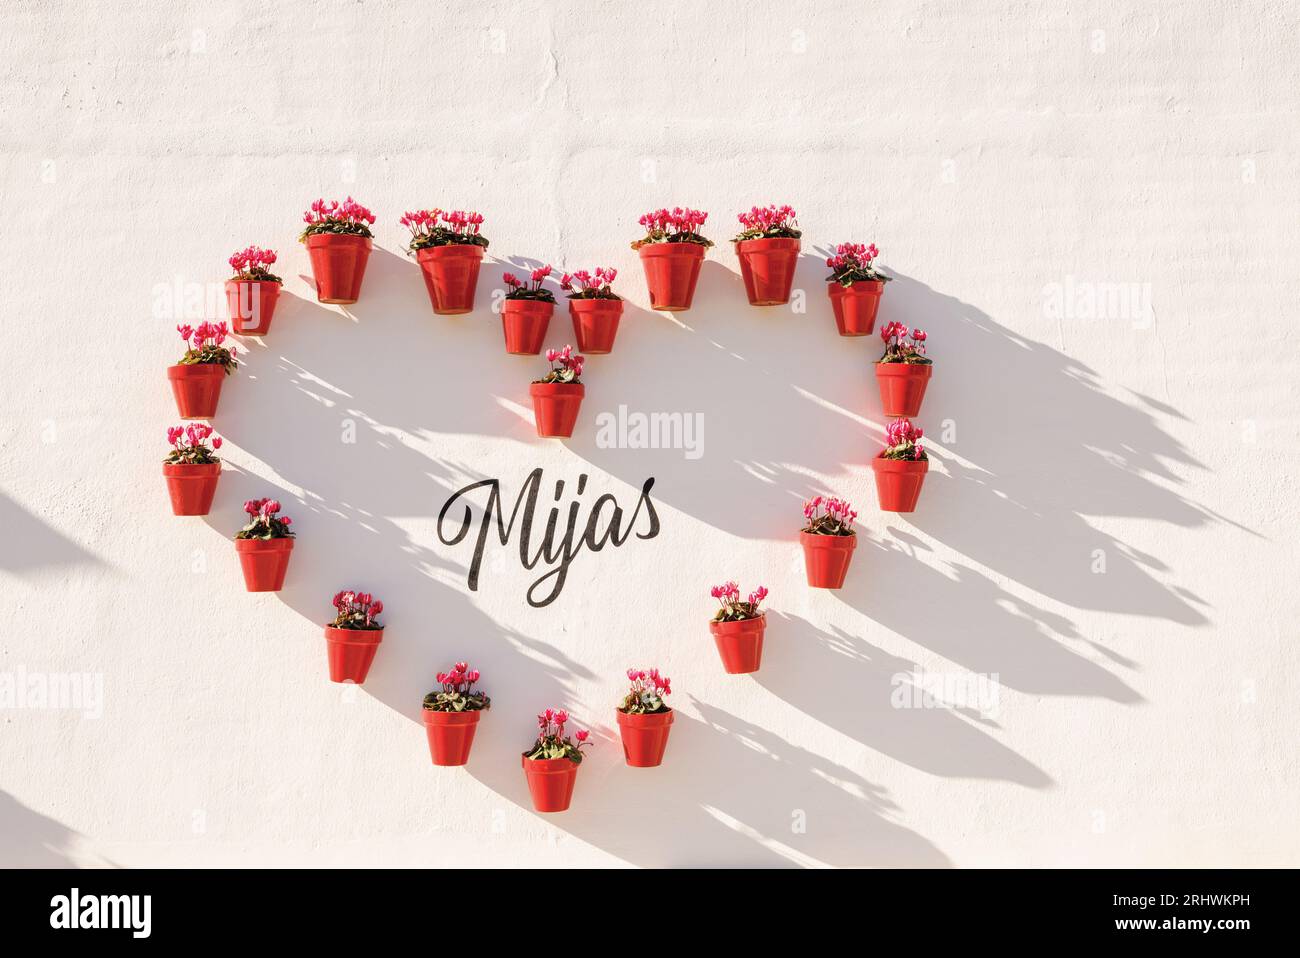 Mijas, Costa del sol, province de Malaga, Andalousie, sud de l'Espagne. Arrangement en forme de coeur de pots de fleurs encerclant le nom de la ville de Mijas. Banque D'Images